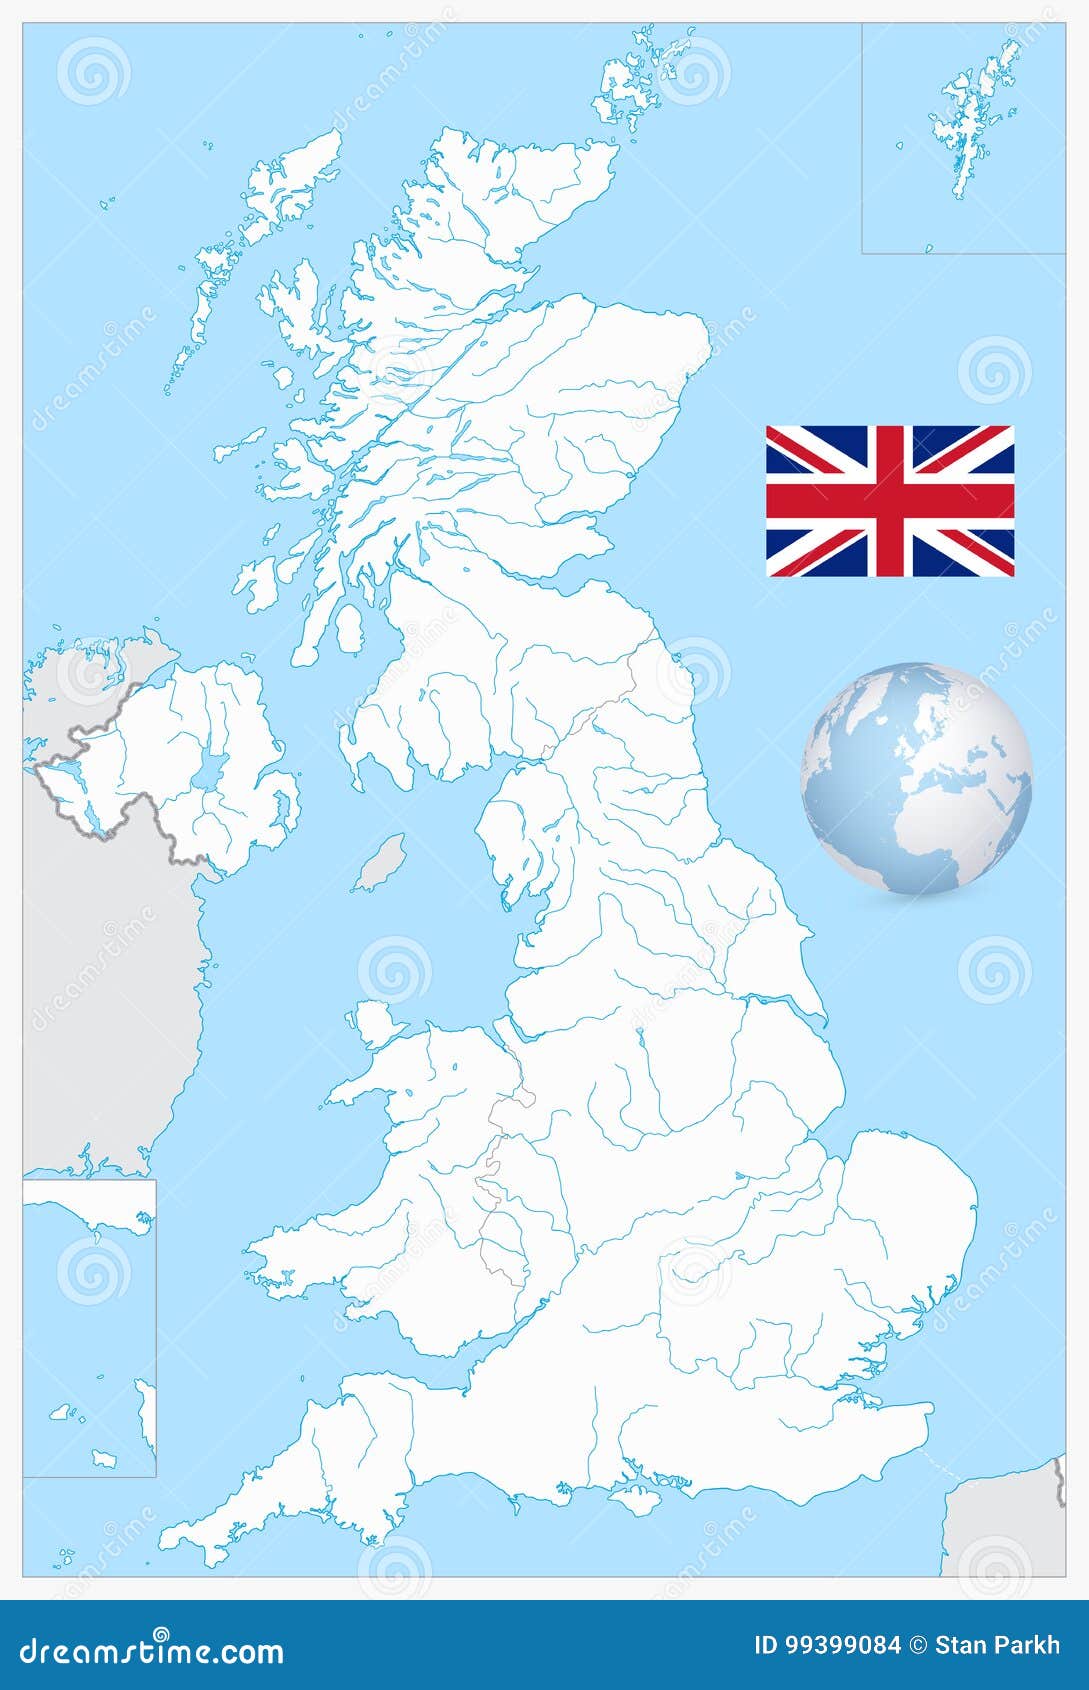 Великобритания на контурной карте. Карта Великобритании контур. Карта Великобритании пустая. Контурная карта Великобритании. Трафарет карты Великобритании.